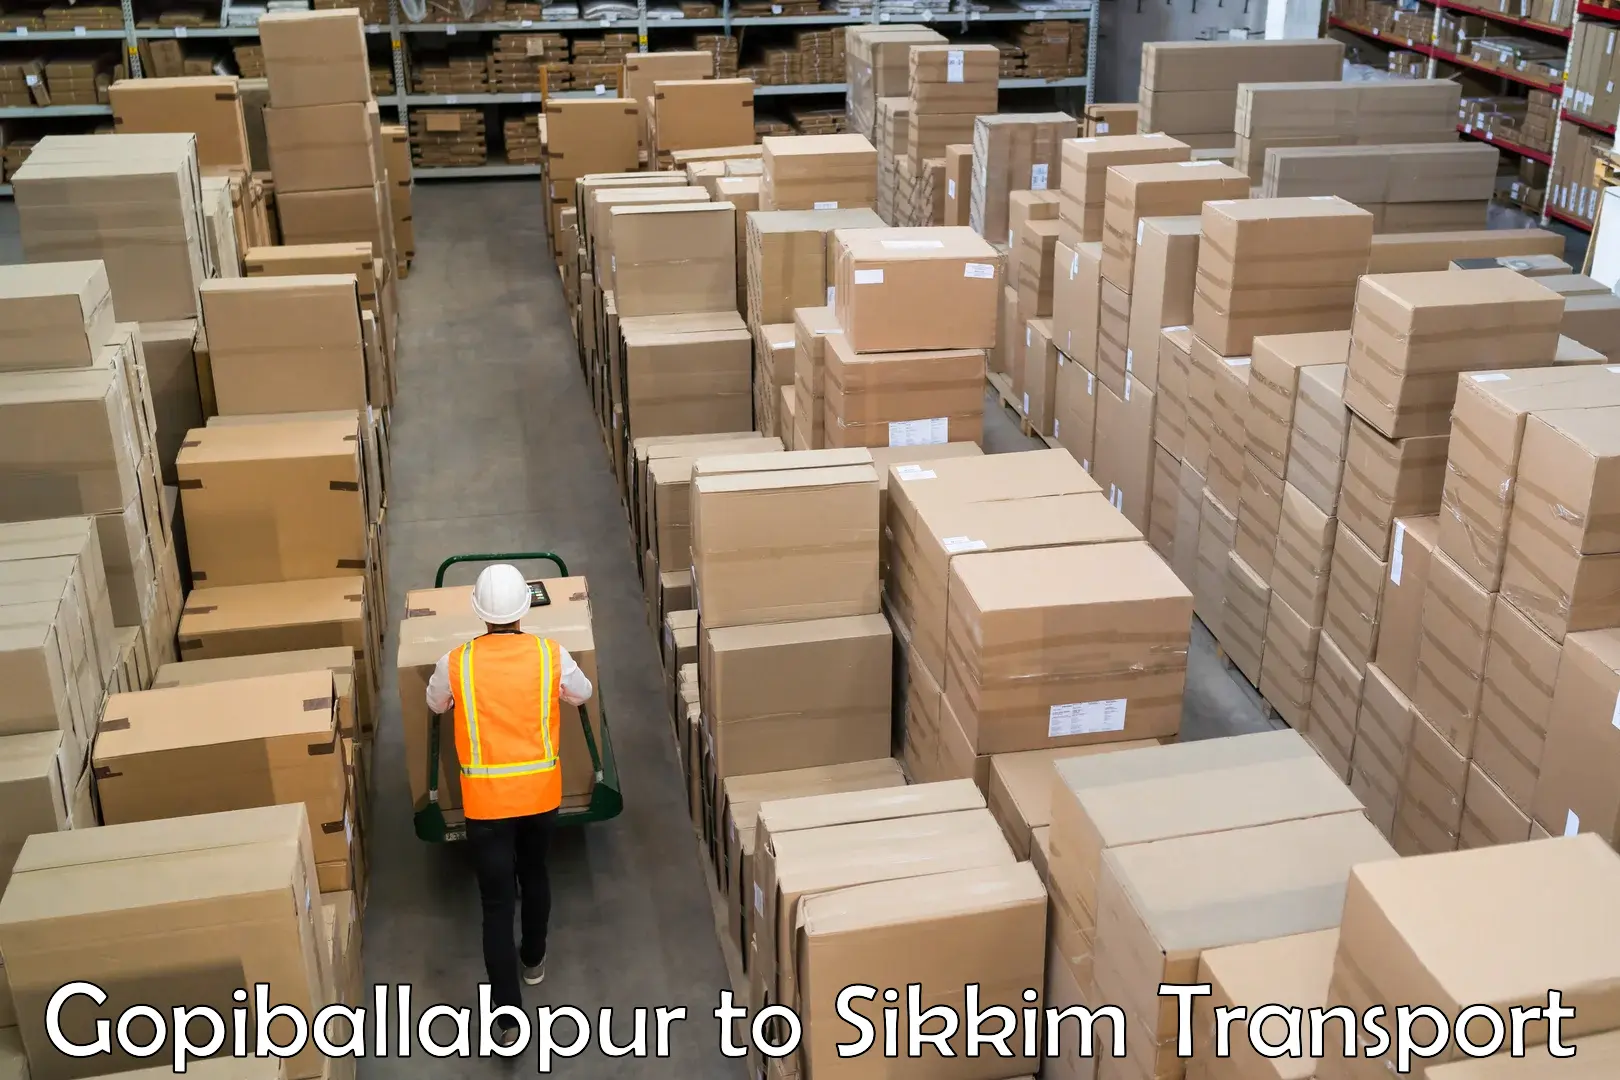 Shipping partner Gopiballabpur to East Sikkim